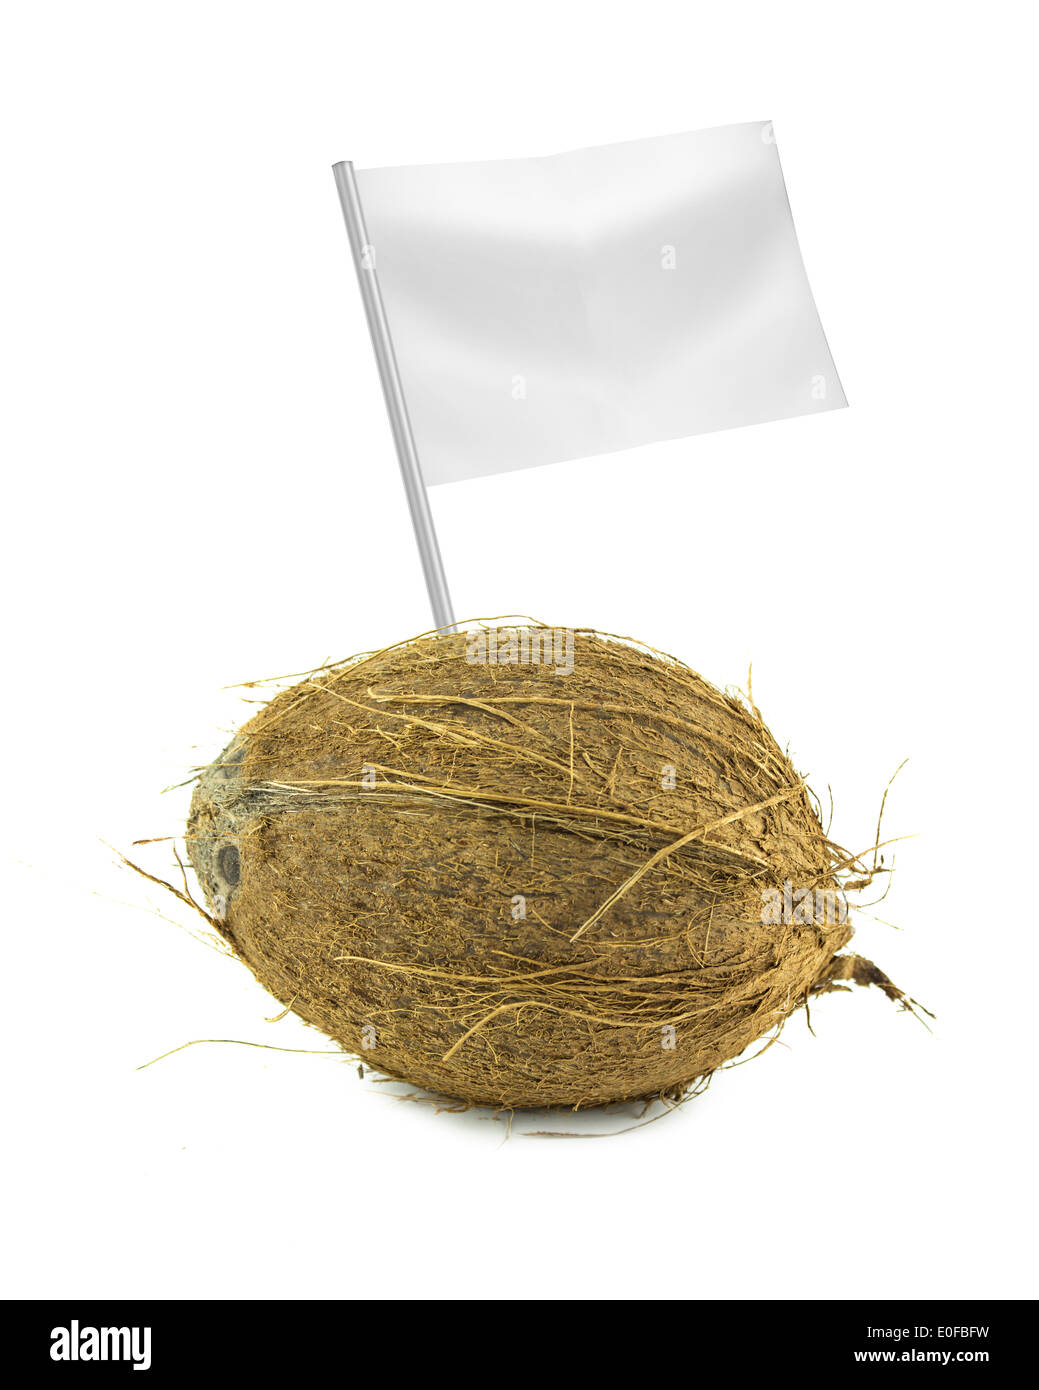 Gesund und Bio-Lebensmittel-Konzept. Frische Kokosnuss mit Flagge zeigt den nutzen oder den Preis der Früchte. Stockfoto